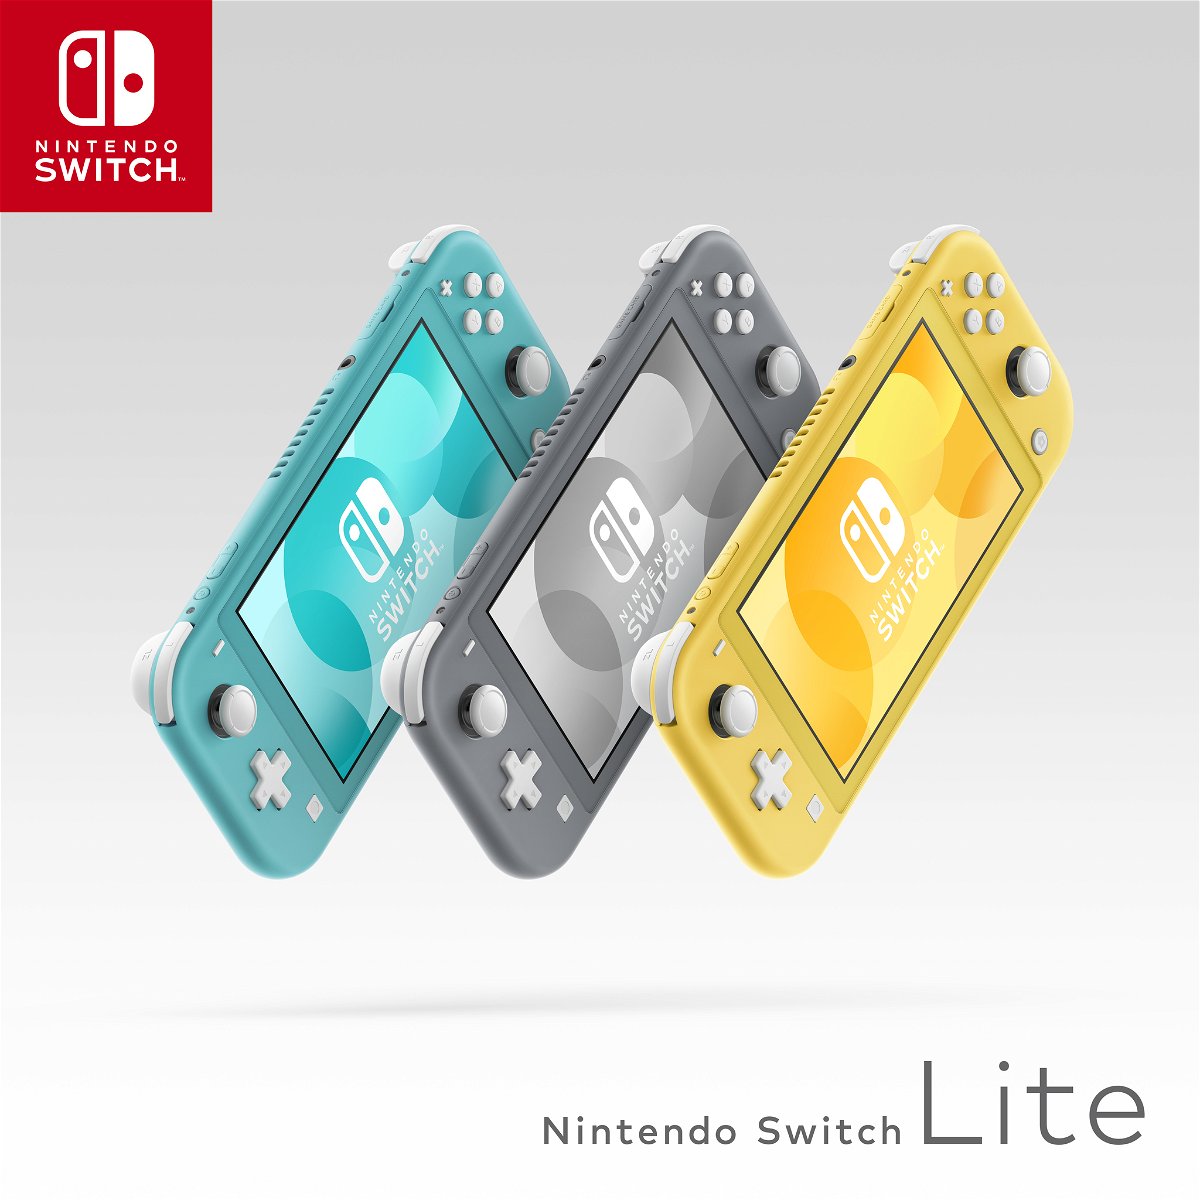 Immagine promozionale di Nintendo Switch Lite